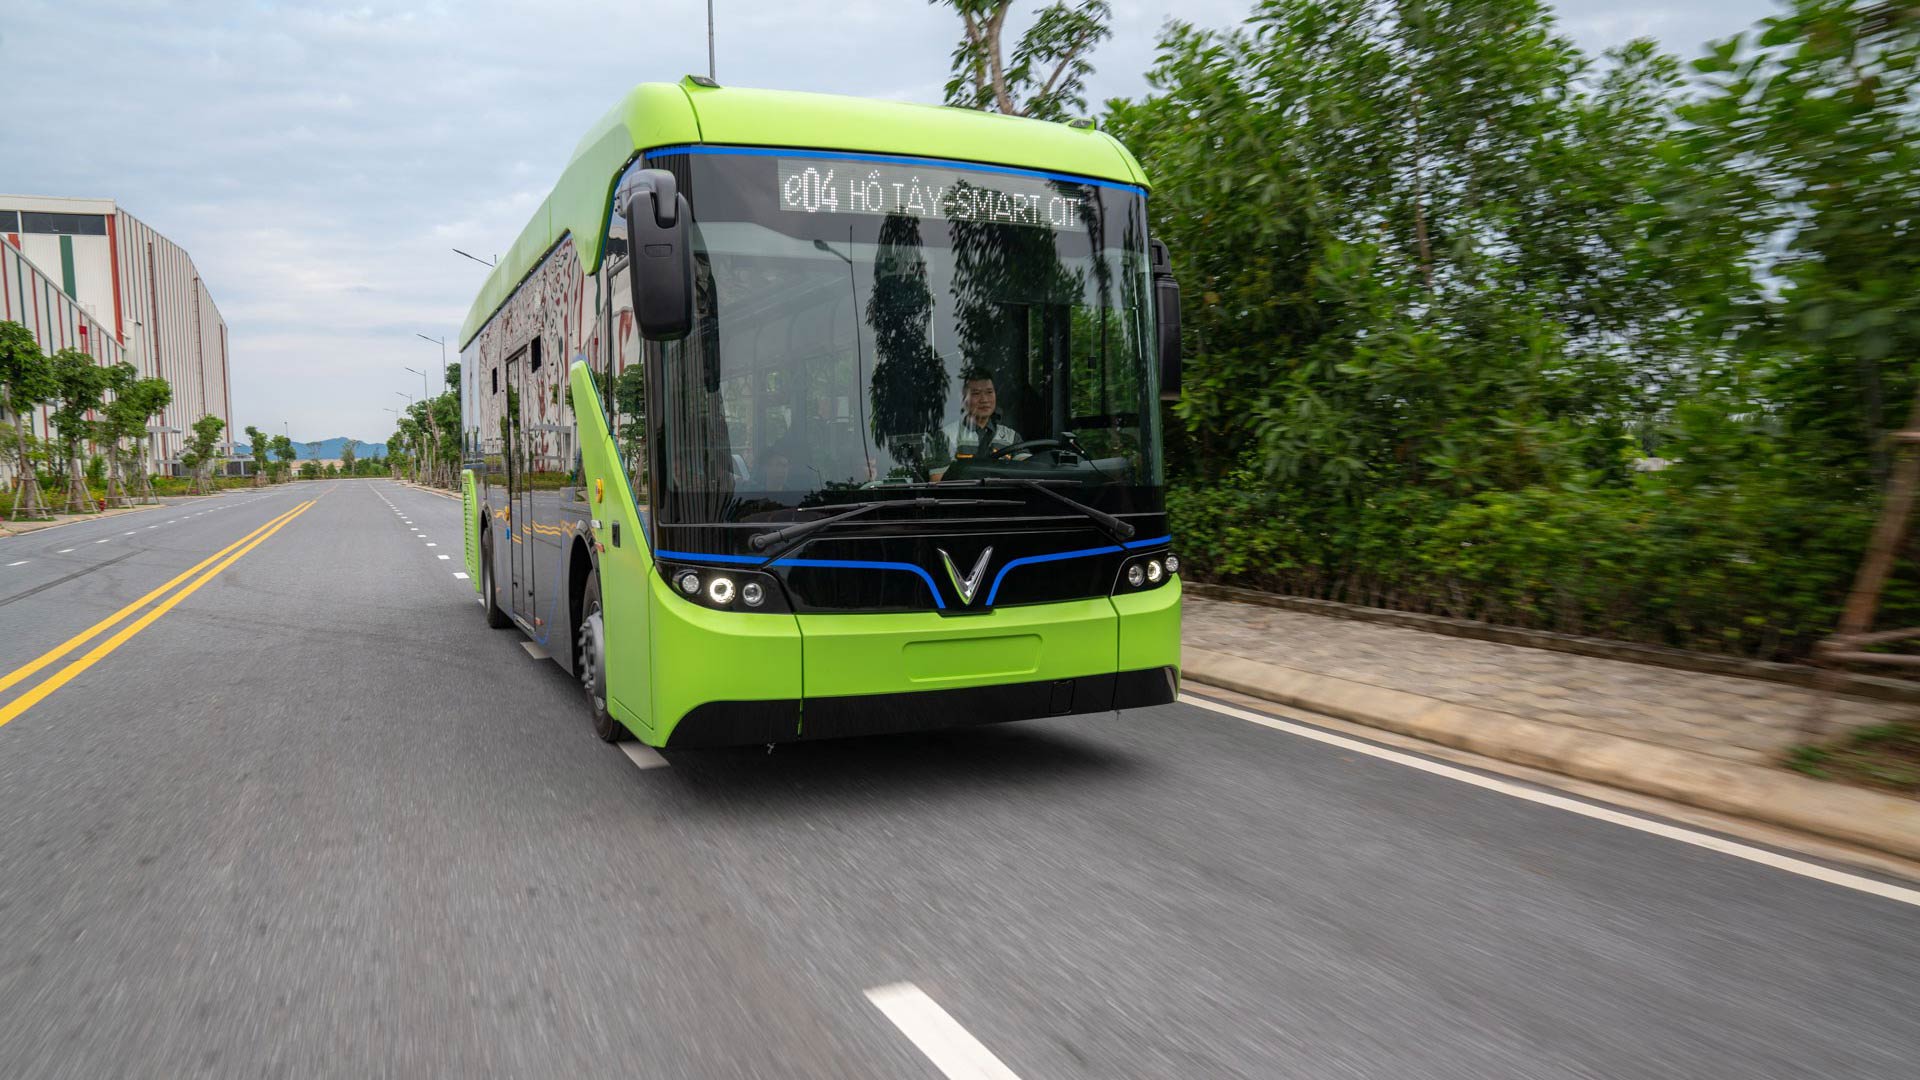 Xe Bus điện của VinFast sắp hoạt động tại Hà Nội, nhà ga chính sắp hoàn thiện Vingroup chính thức chạy thử nghiệm xe buýt điện VinFast xe-bus-vinfast-04.jpg